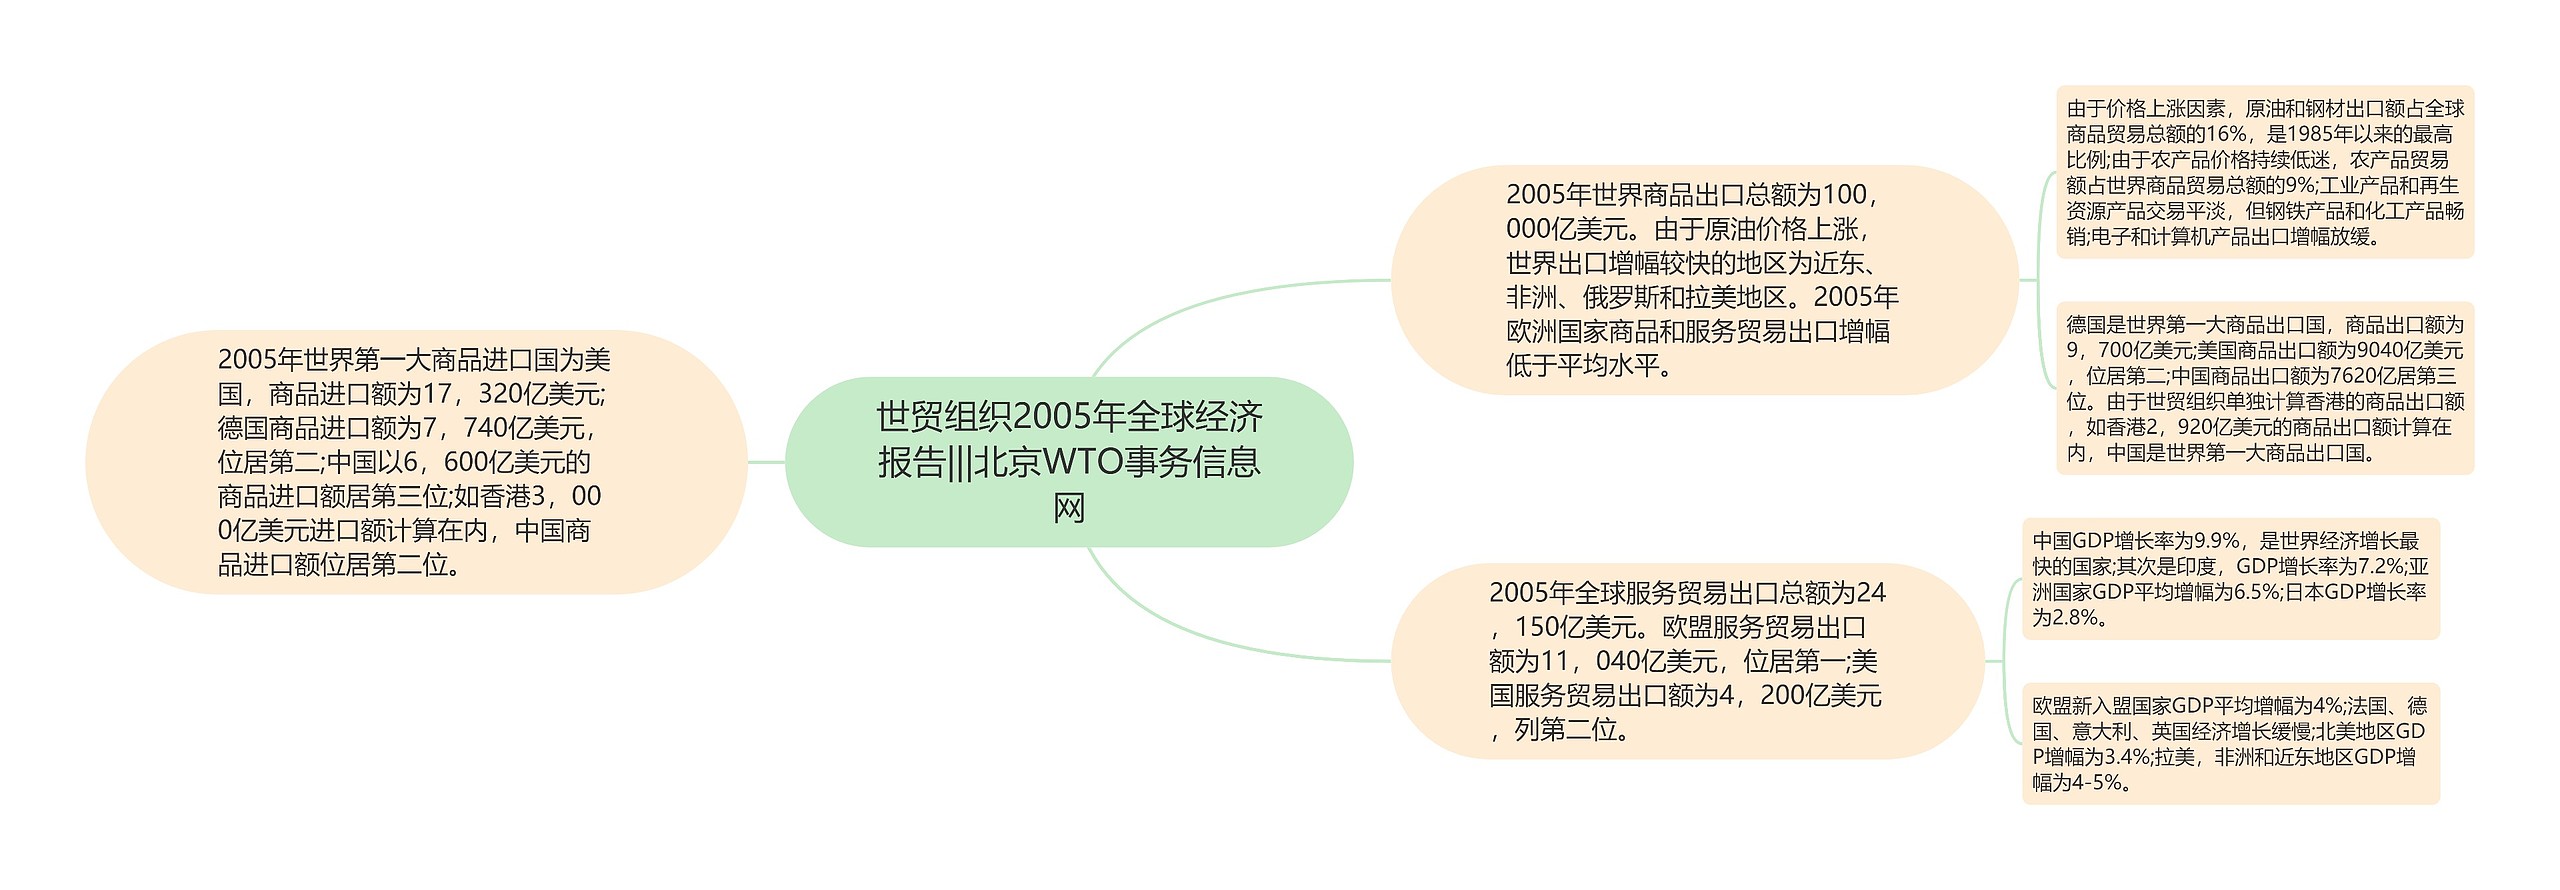 世贸组织2005年全球经济报告|||北京WTO事务信息网